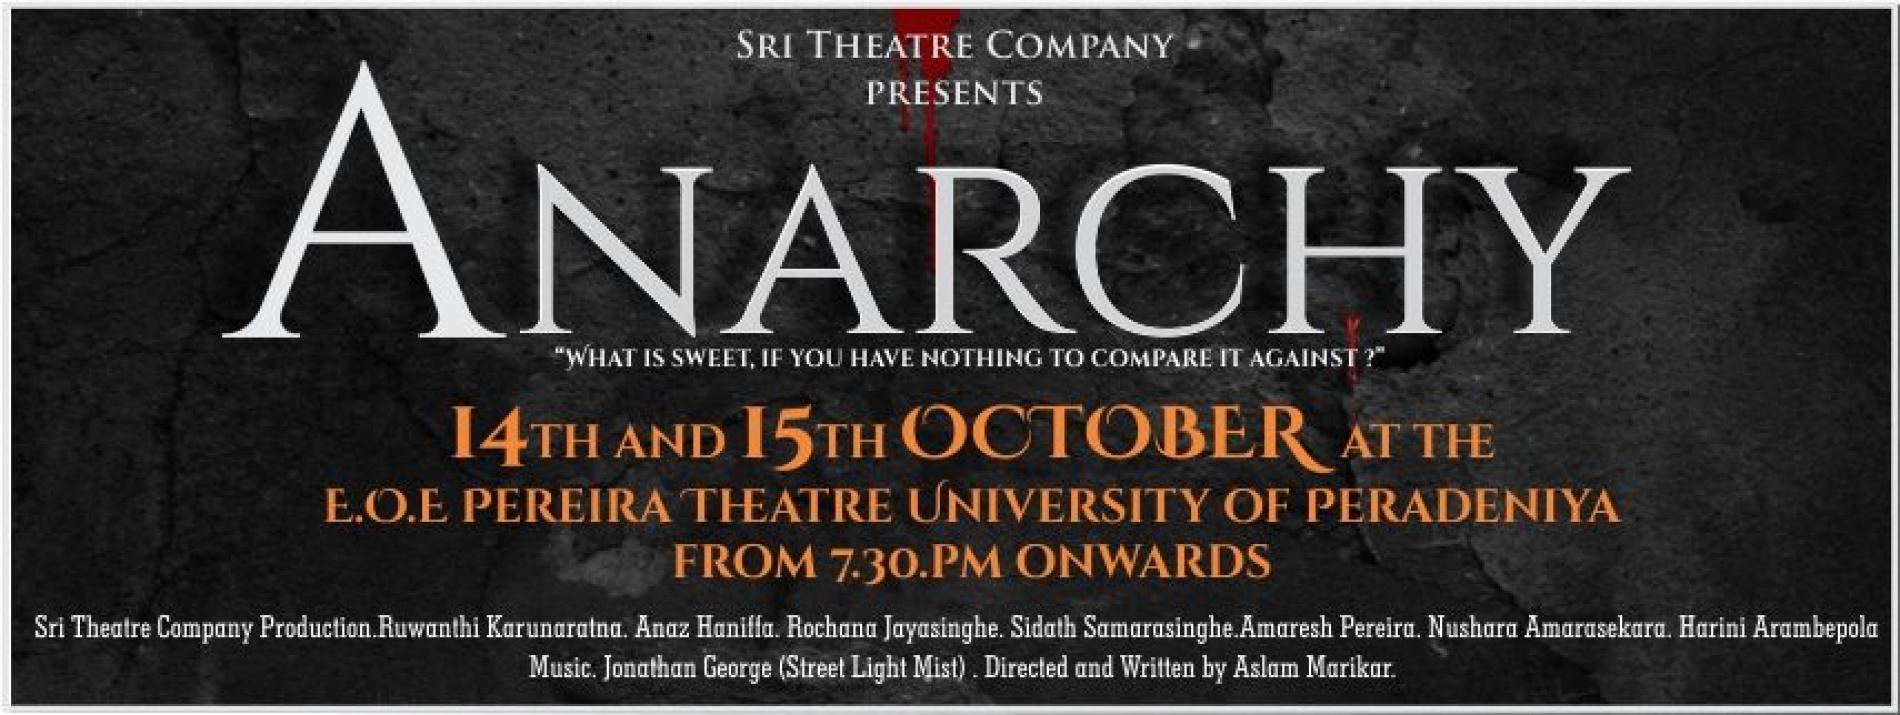 Sri Theatre Company Presents Anarchy